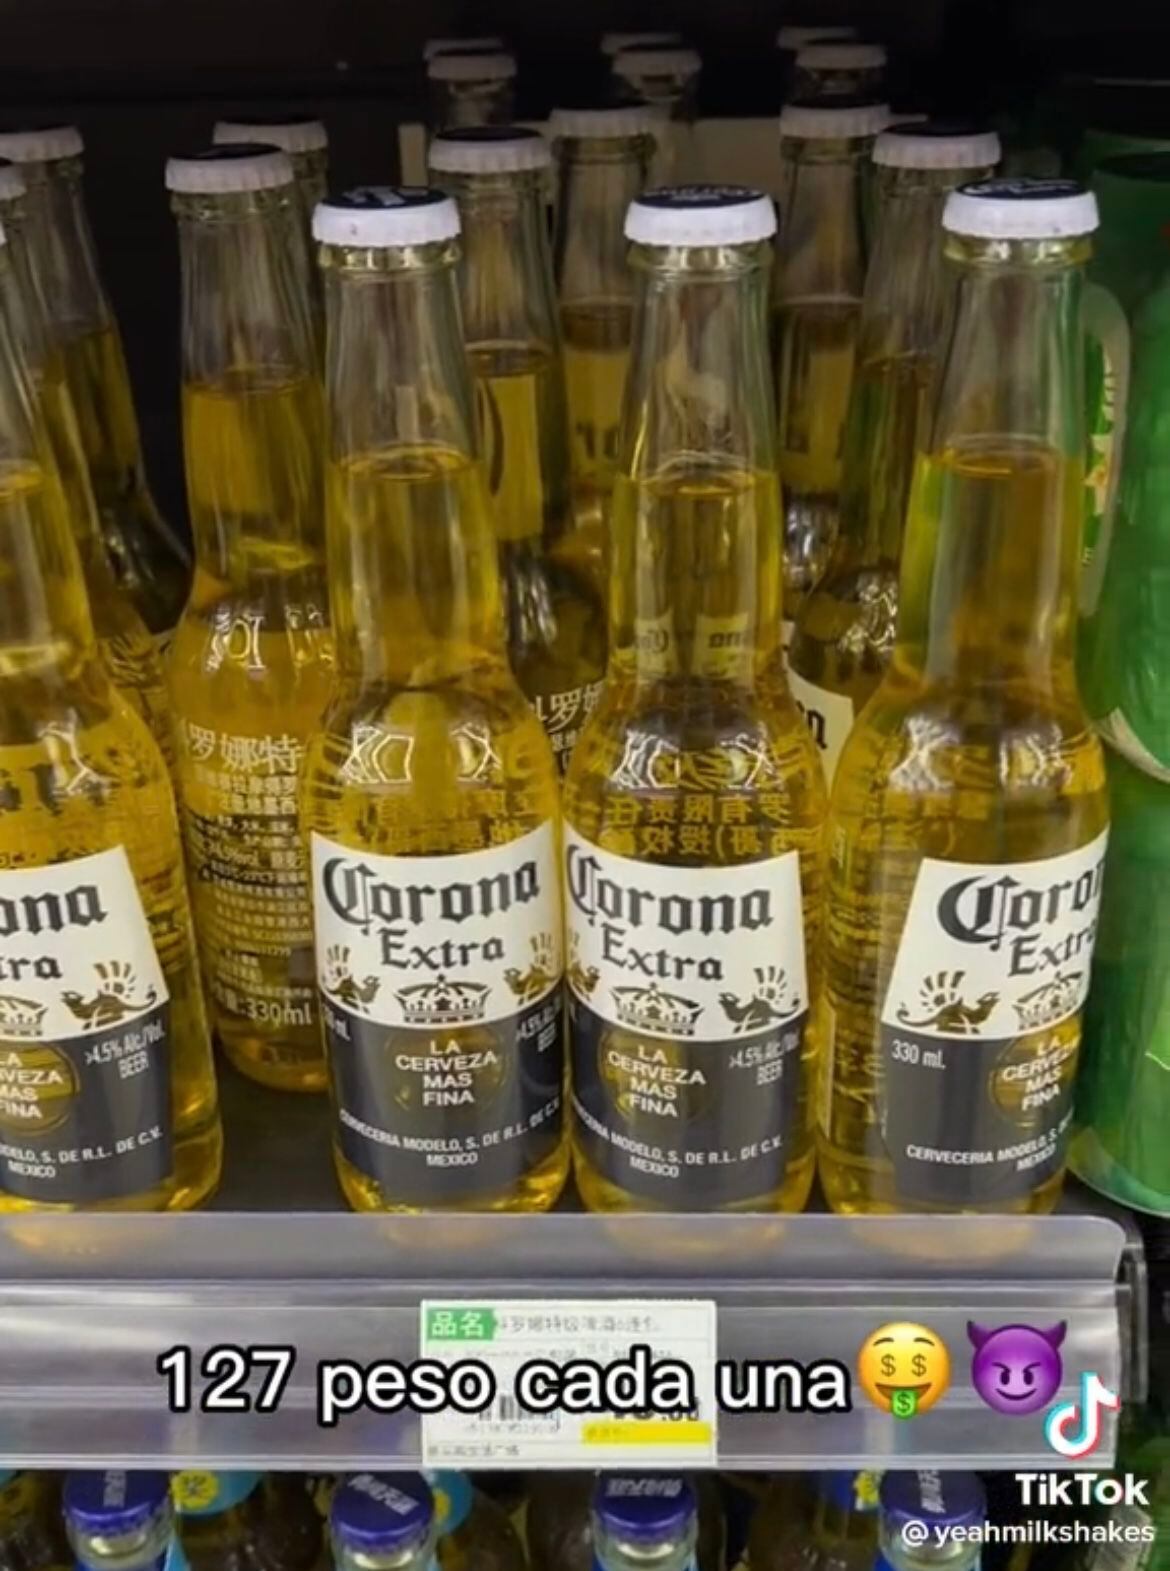 Una Tik Toker evidenció el precio de la cerveza Corona en un supermercado de China.  (Foto: Tik Tok / @yeahmilkshakes)